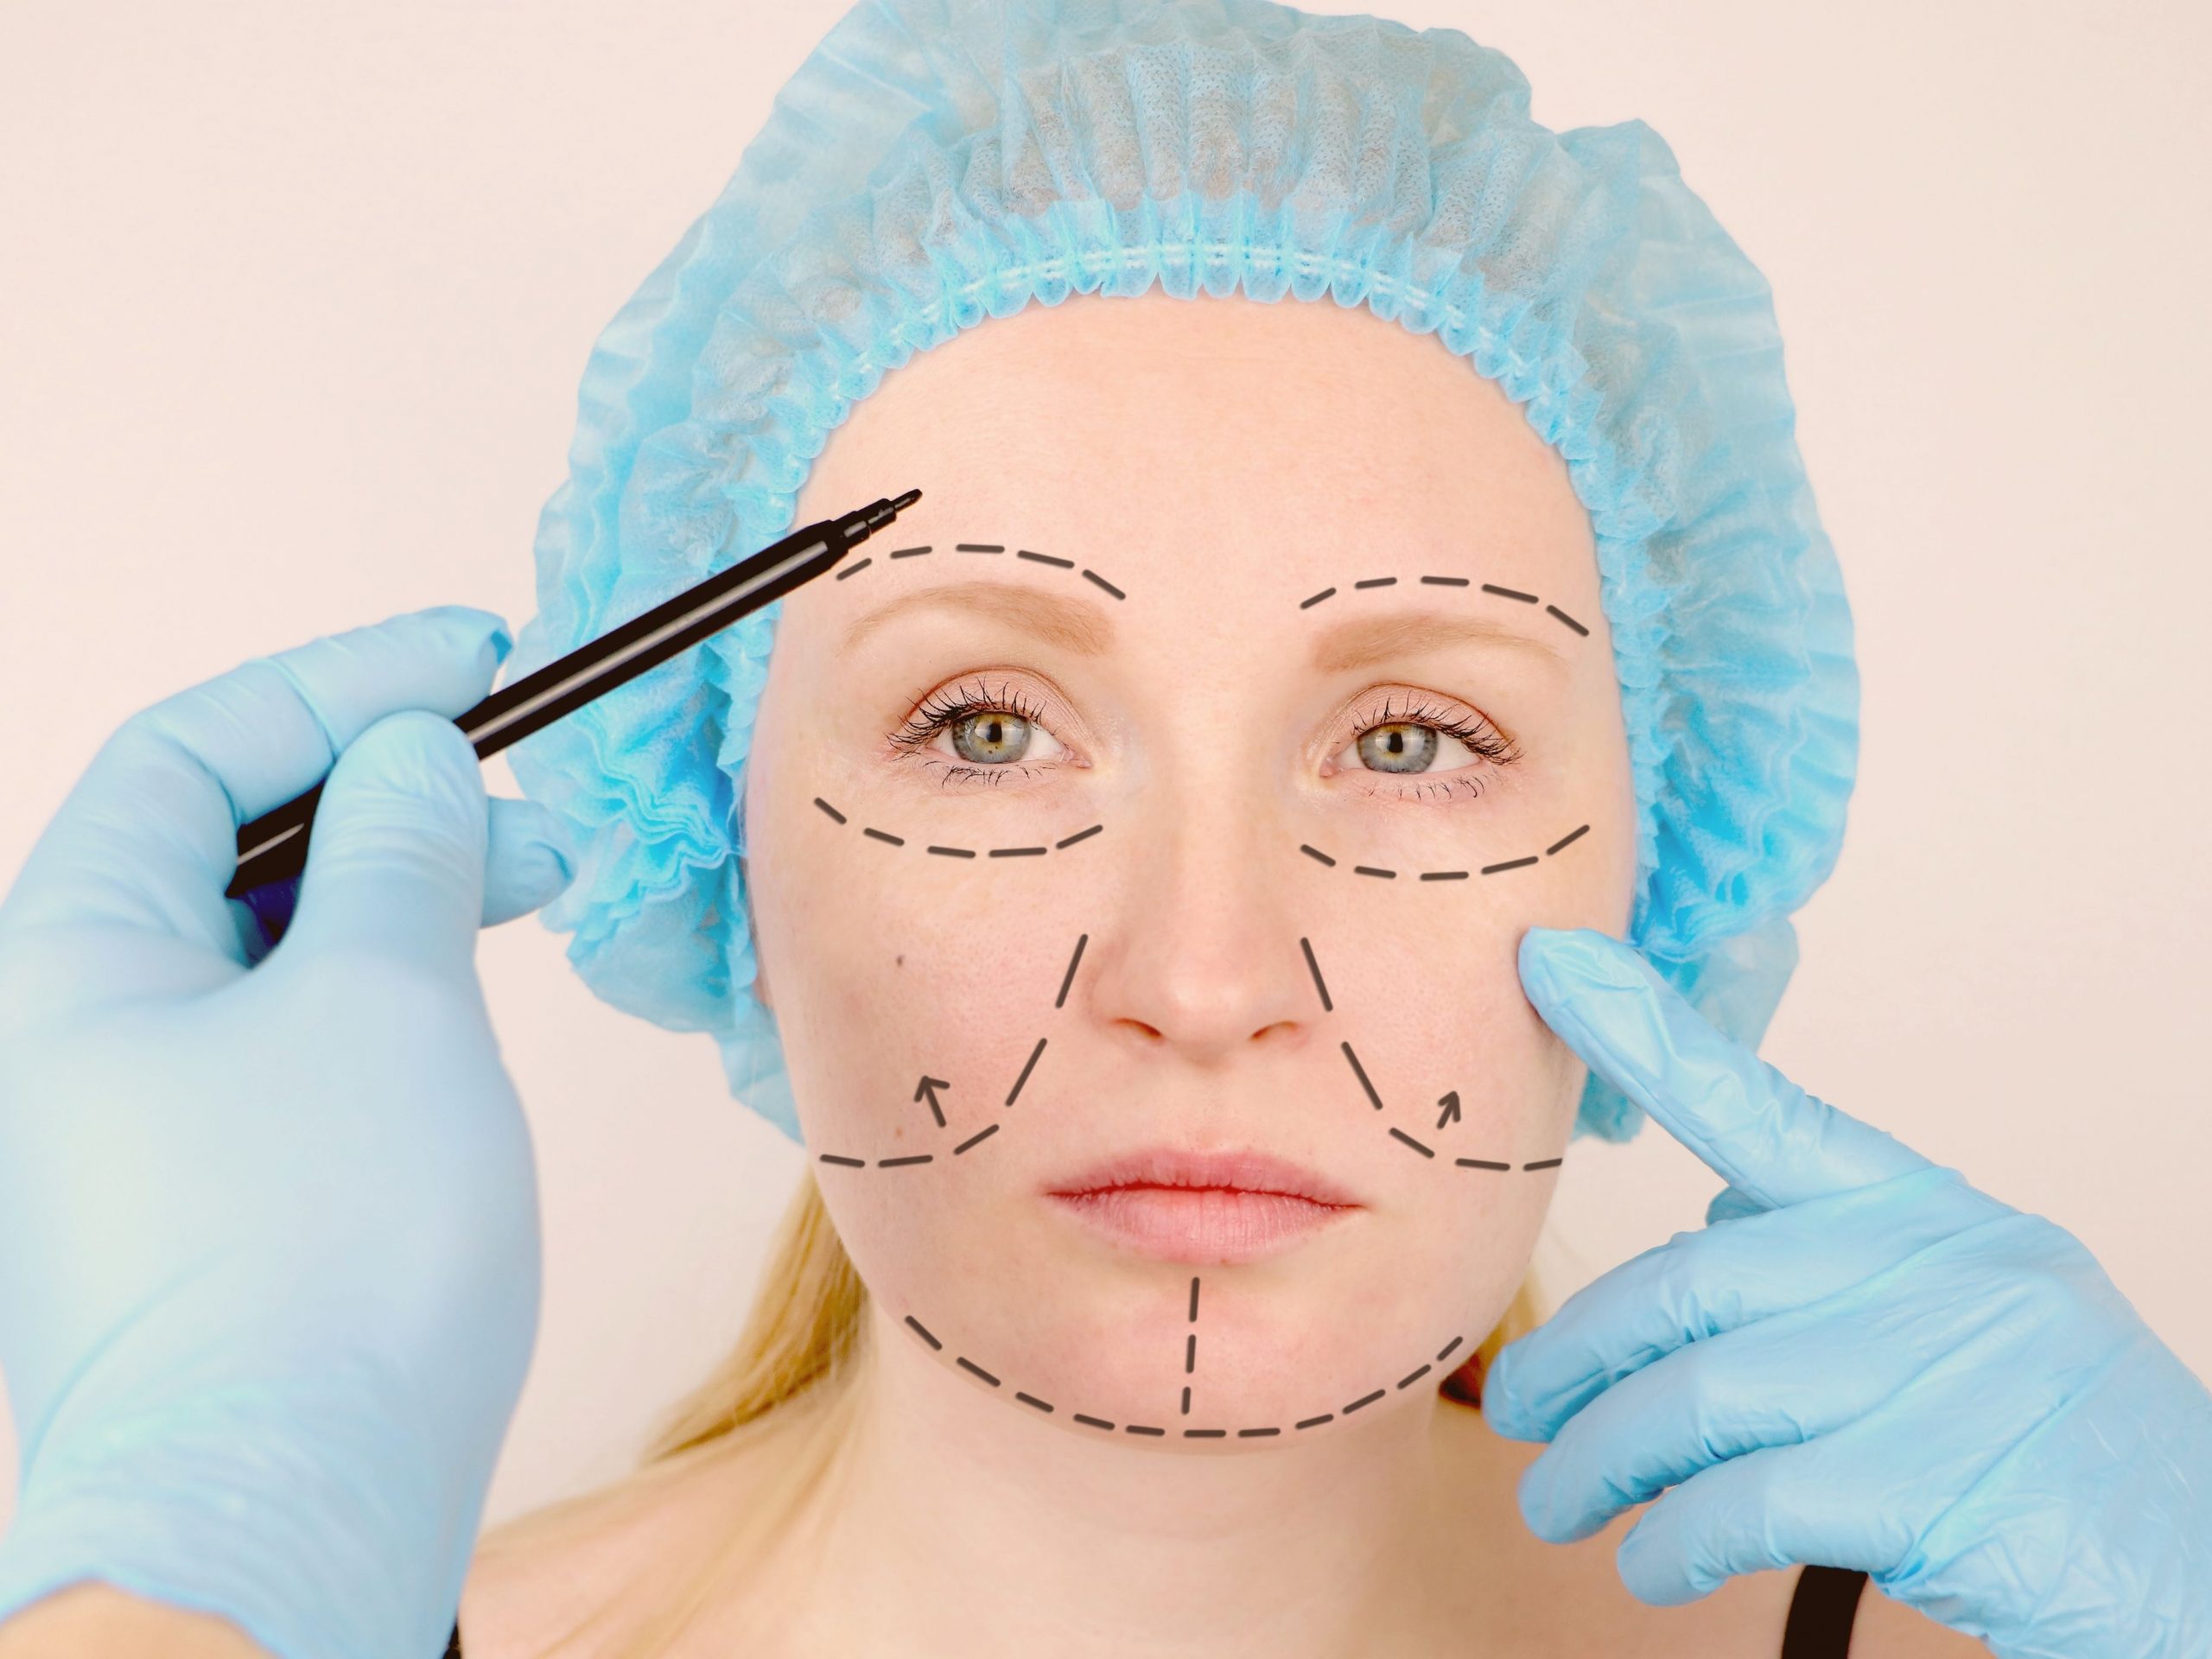 Phương pháp phẫu thuật căng da mặt sẽ thực hiện cắt bỏ phần da thừa